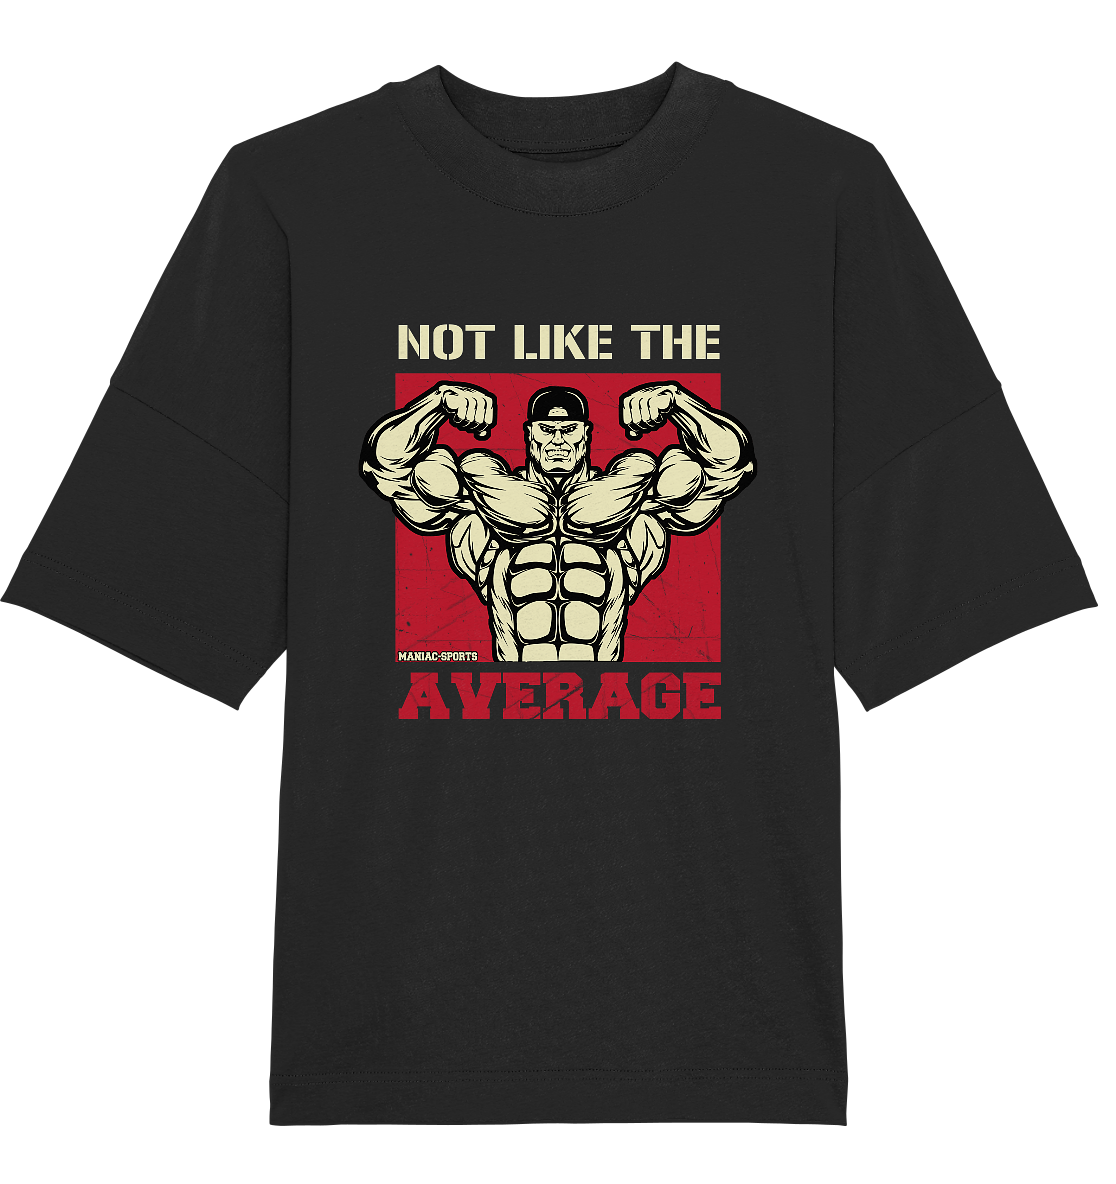 NOT LIKE THE AVERAGE – Oversized Shirt